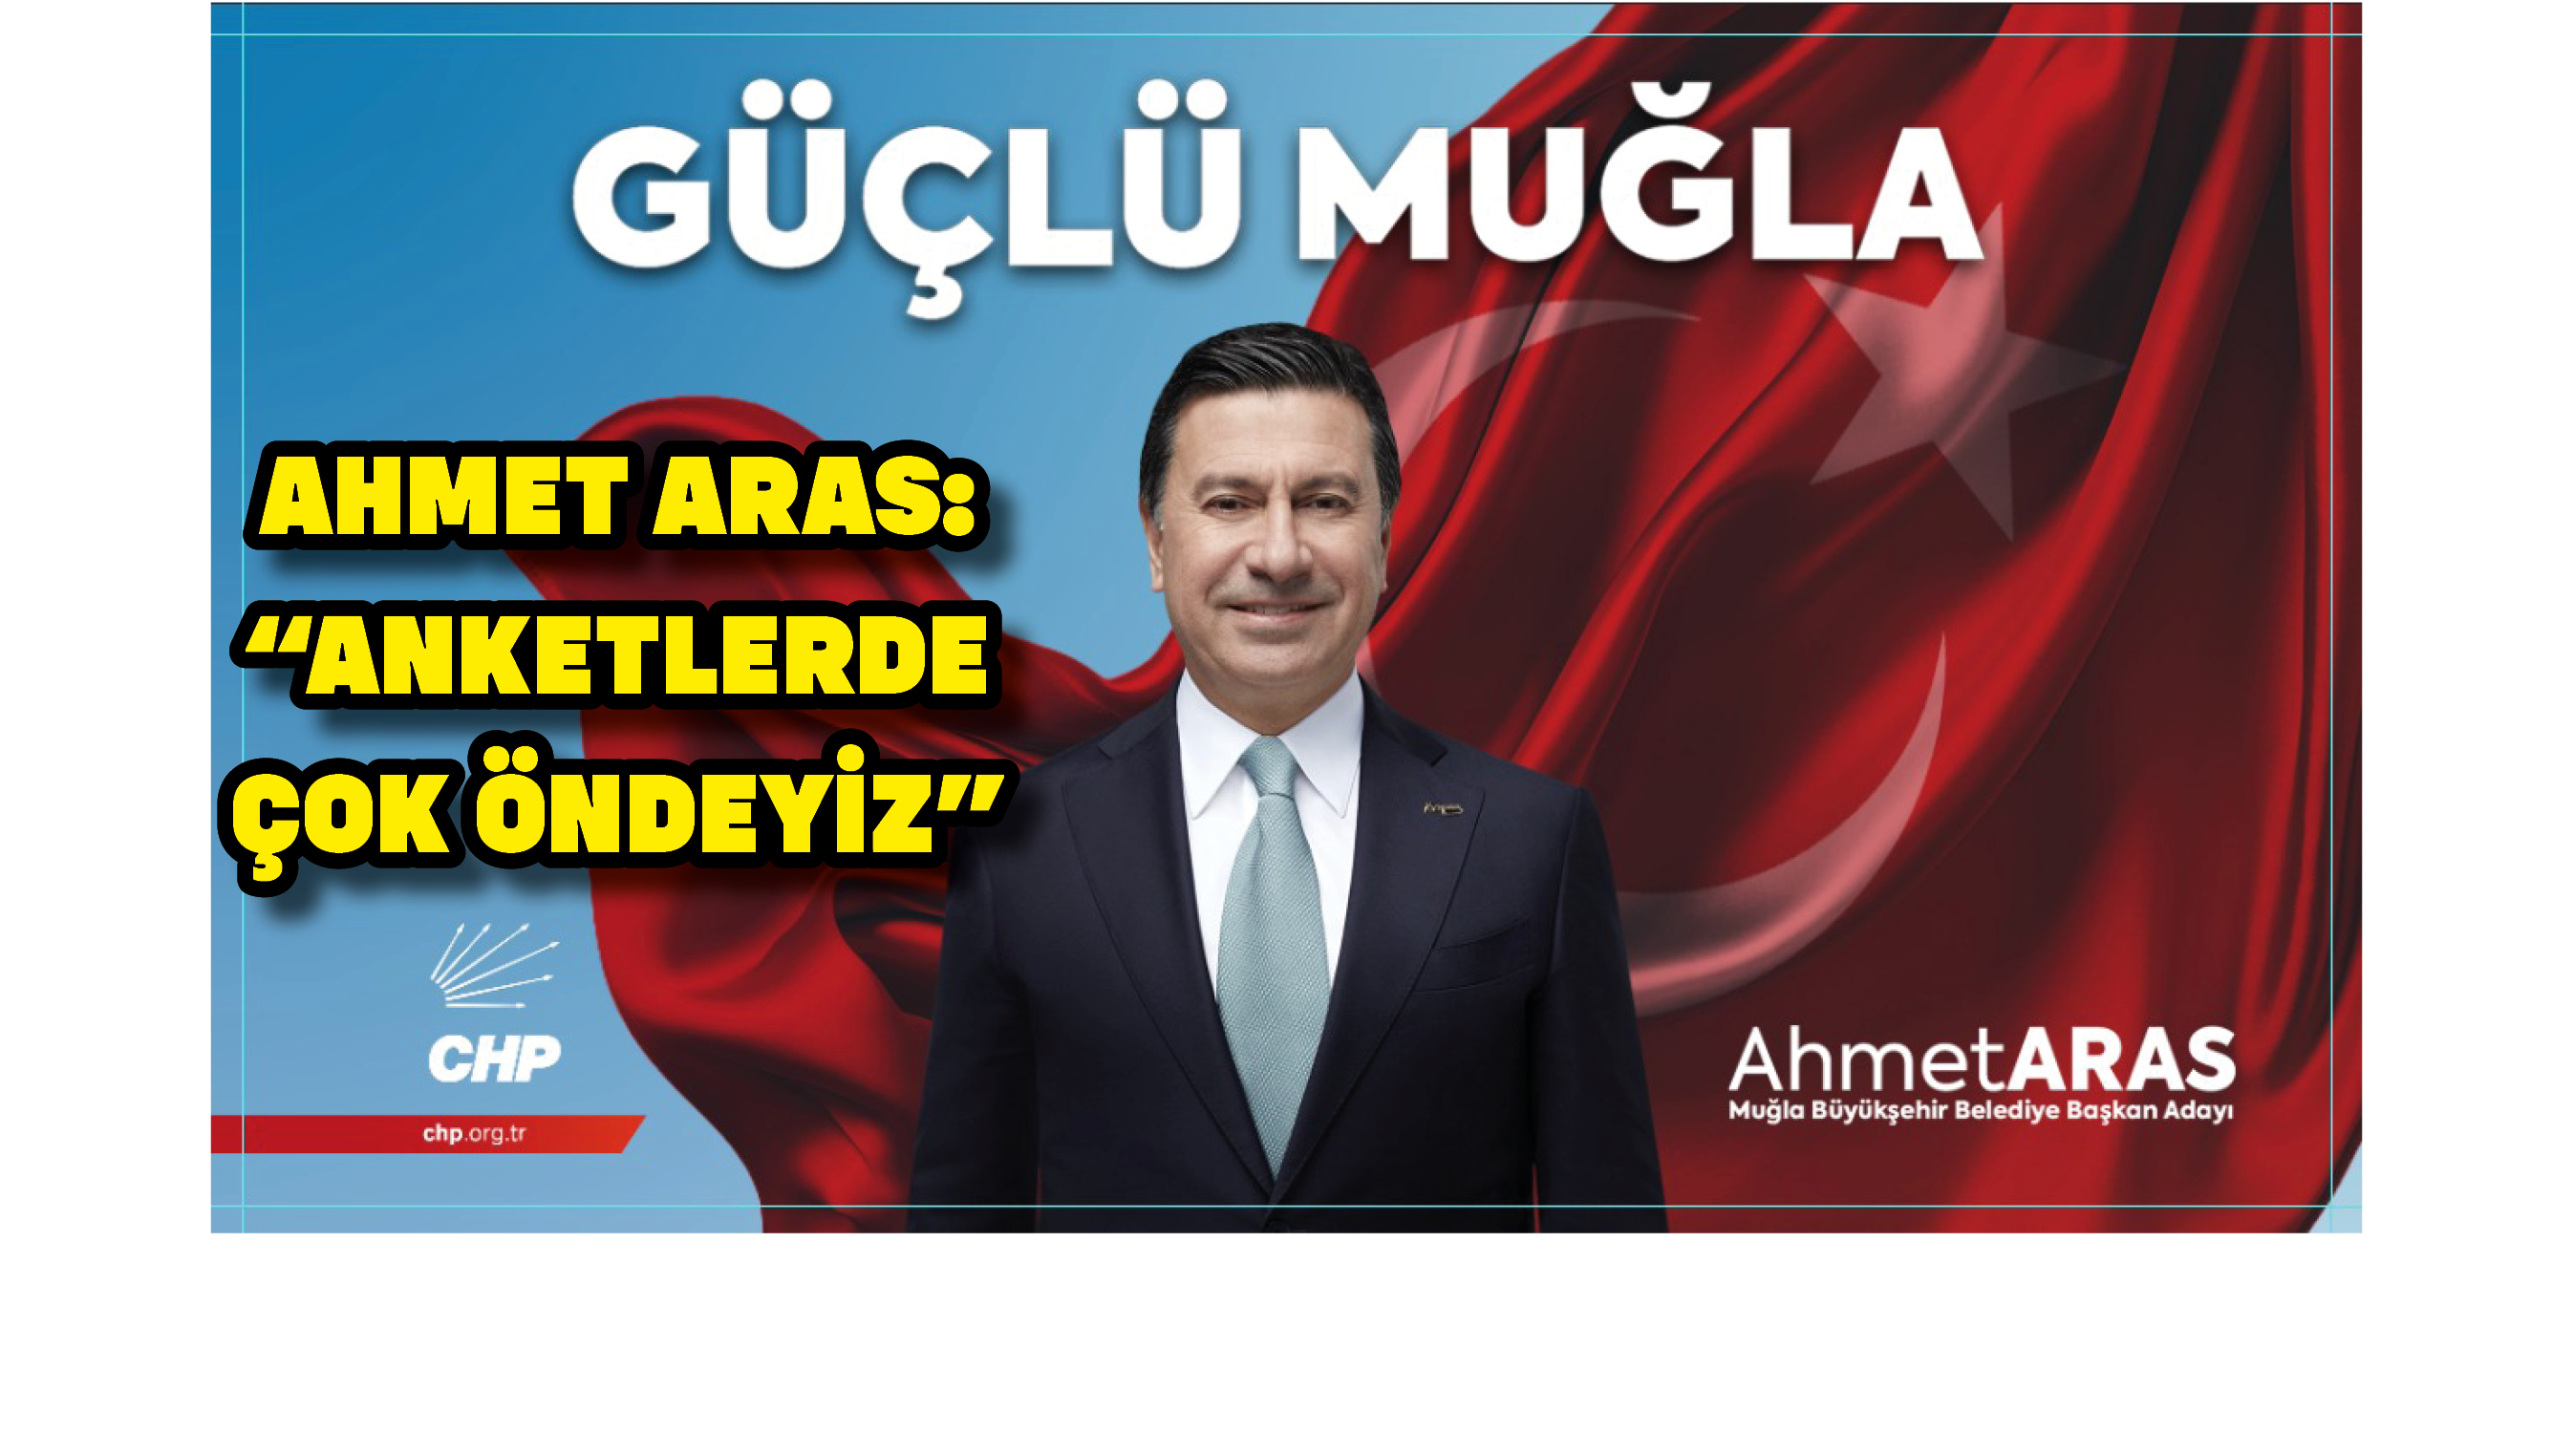 Ahmet Aras: “Anketlerde çok öndeyiz”